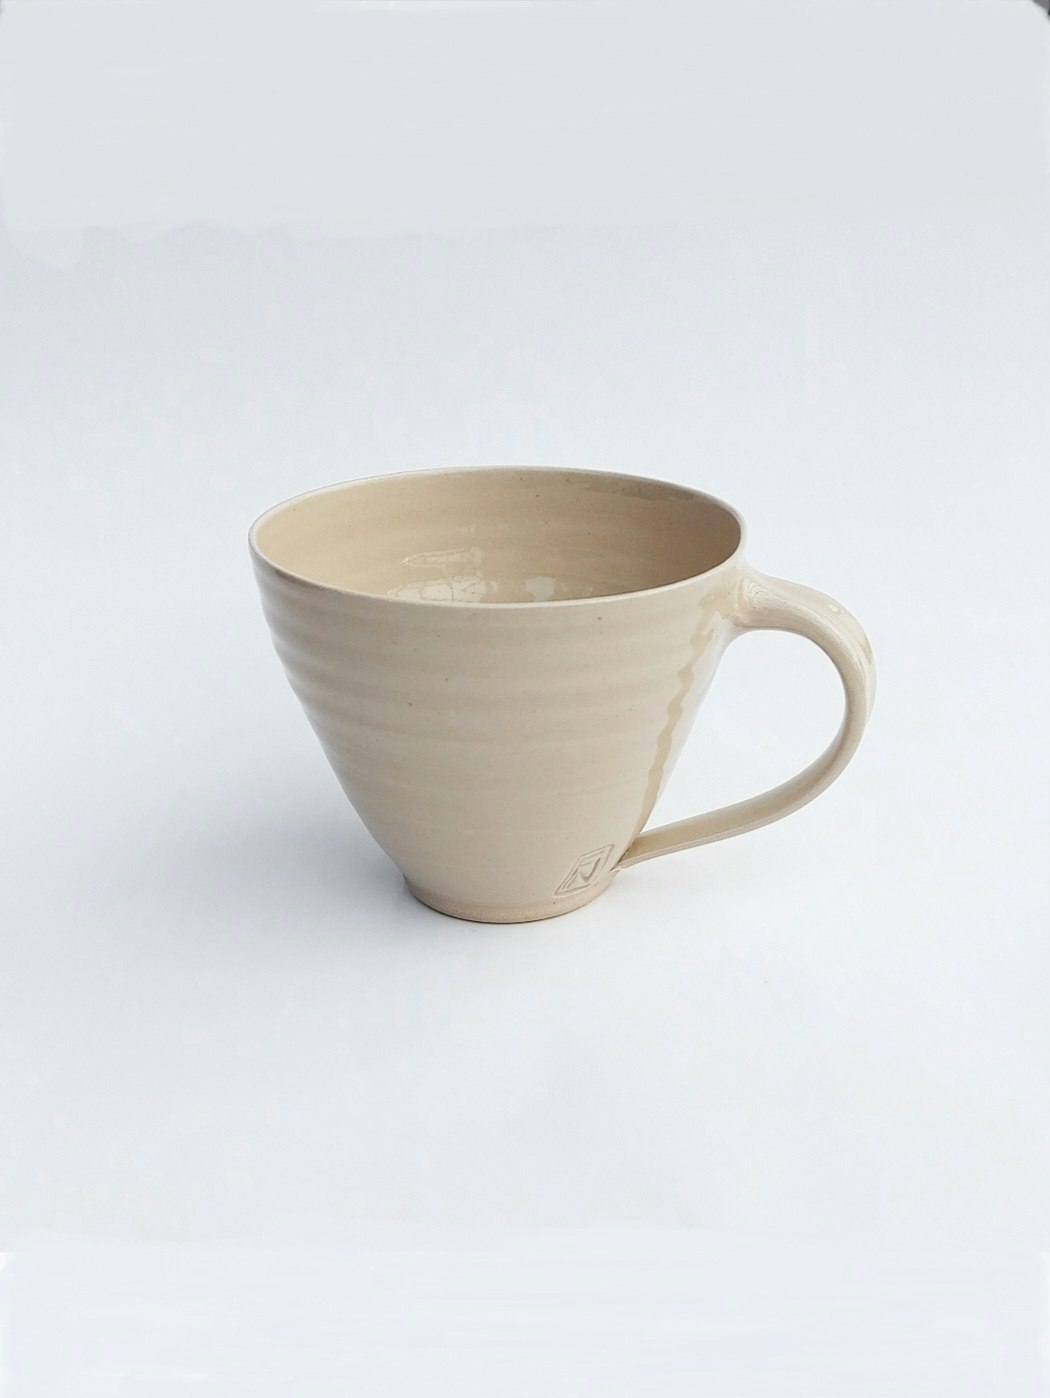 Frida Nilsson Keramik Höganäs Handgjord keramik stengods kaffekopp med öra kaffemugg mugg kopp sand beige drejad pastell